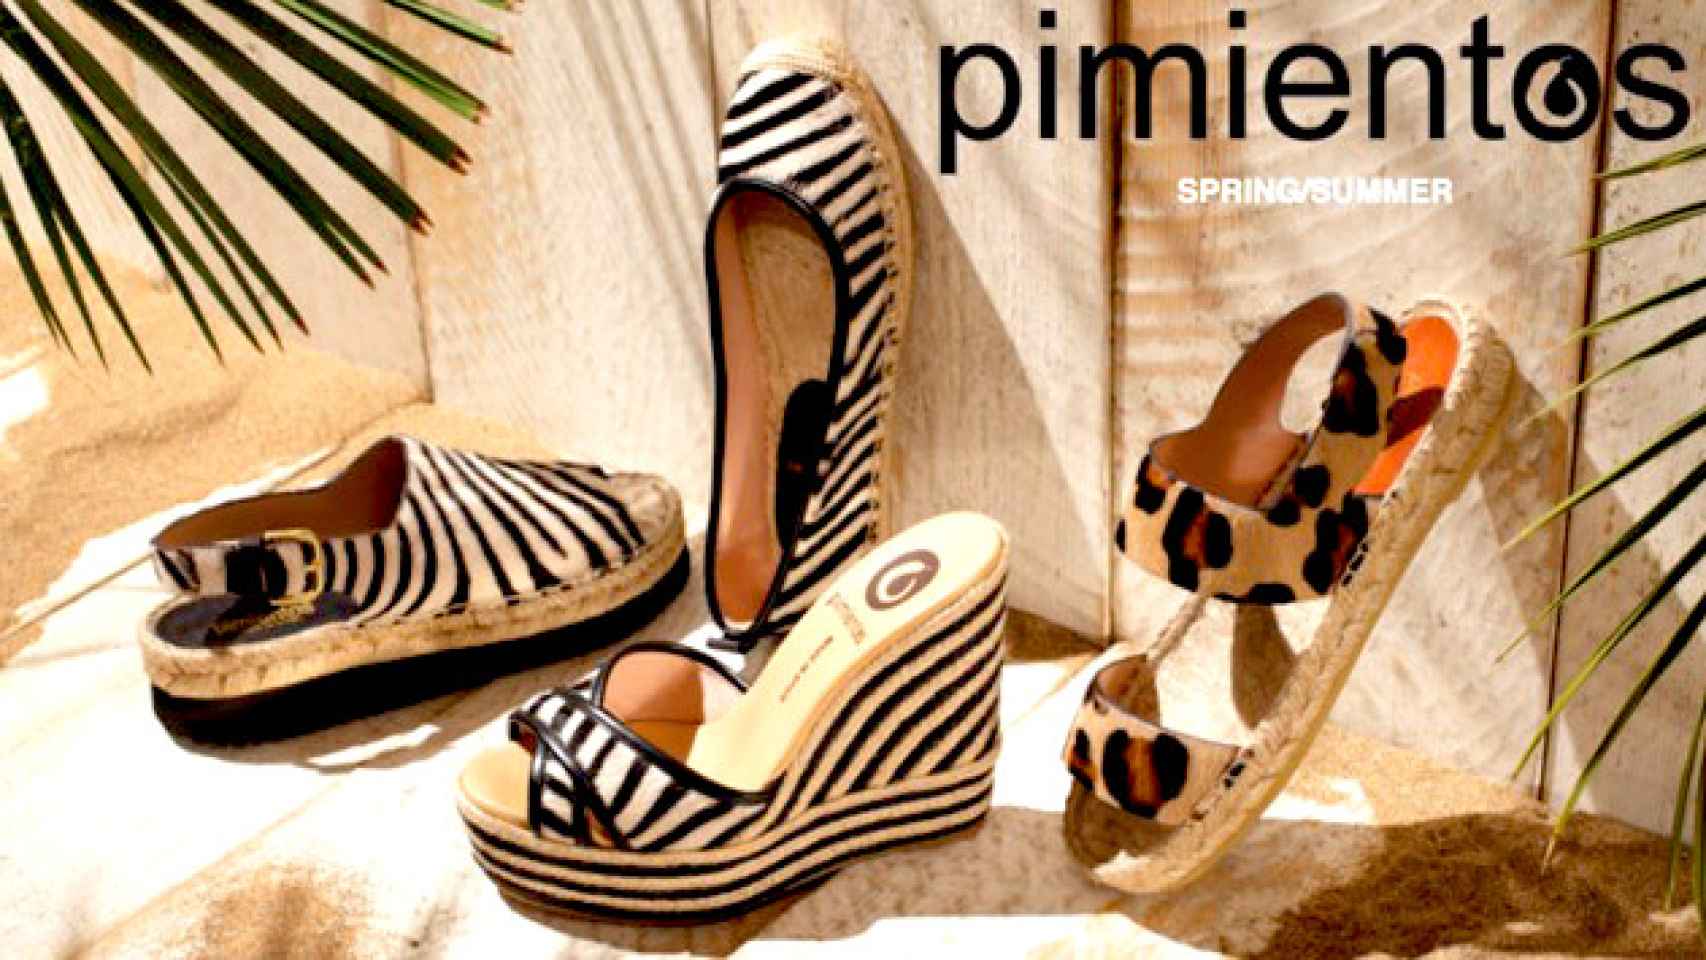 Imagen publicitaria de la marca de zapatos Pimientos de Florencia Marco / PIMIENTOS